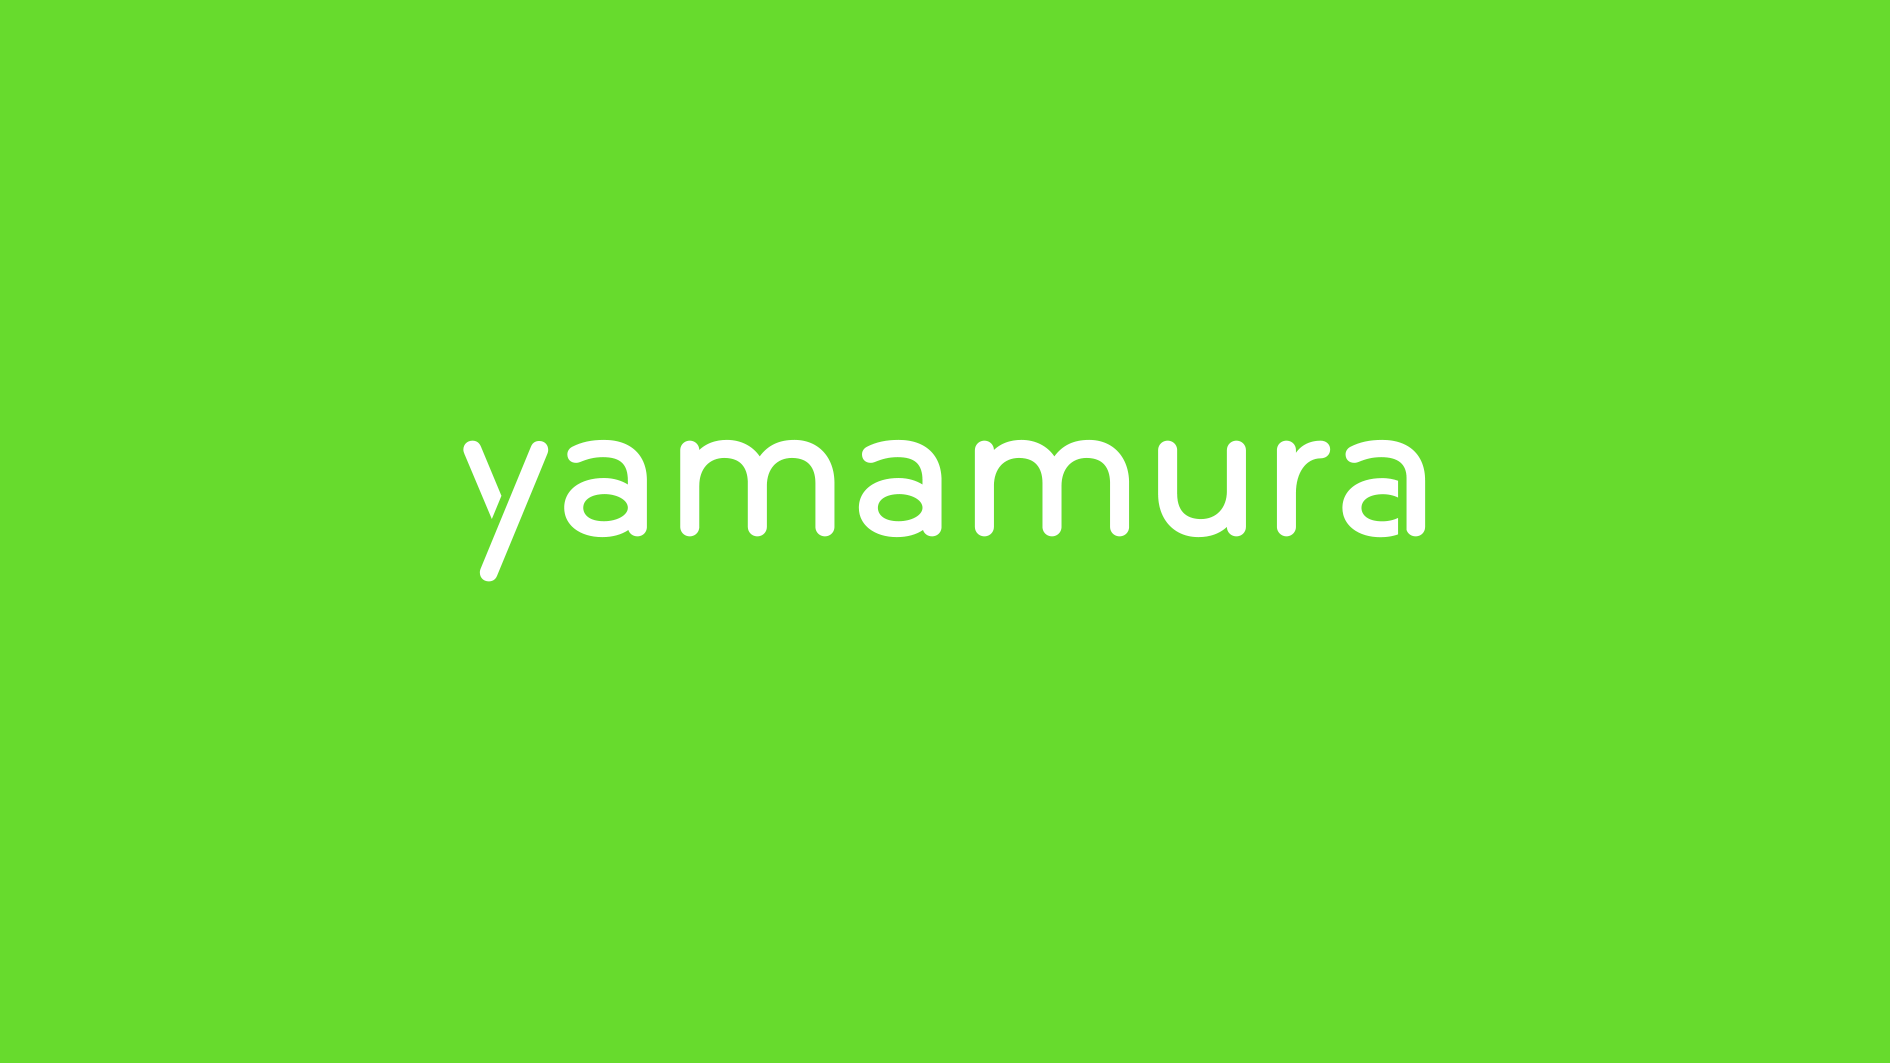 Projeto Estratégia, Identidade e Arquitetura de Marca Yamamura - Pande